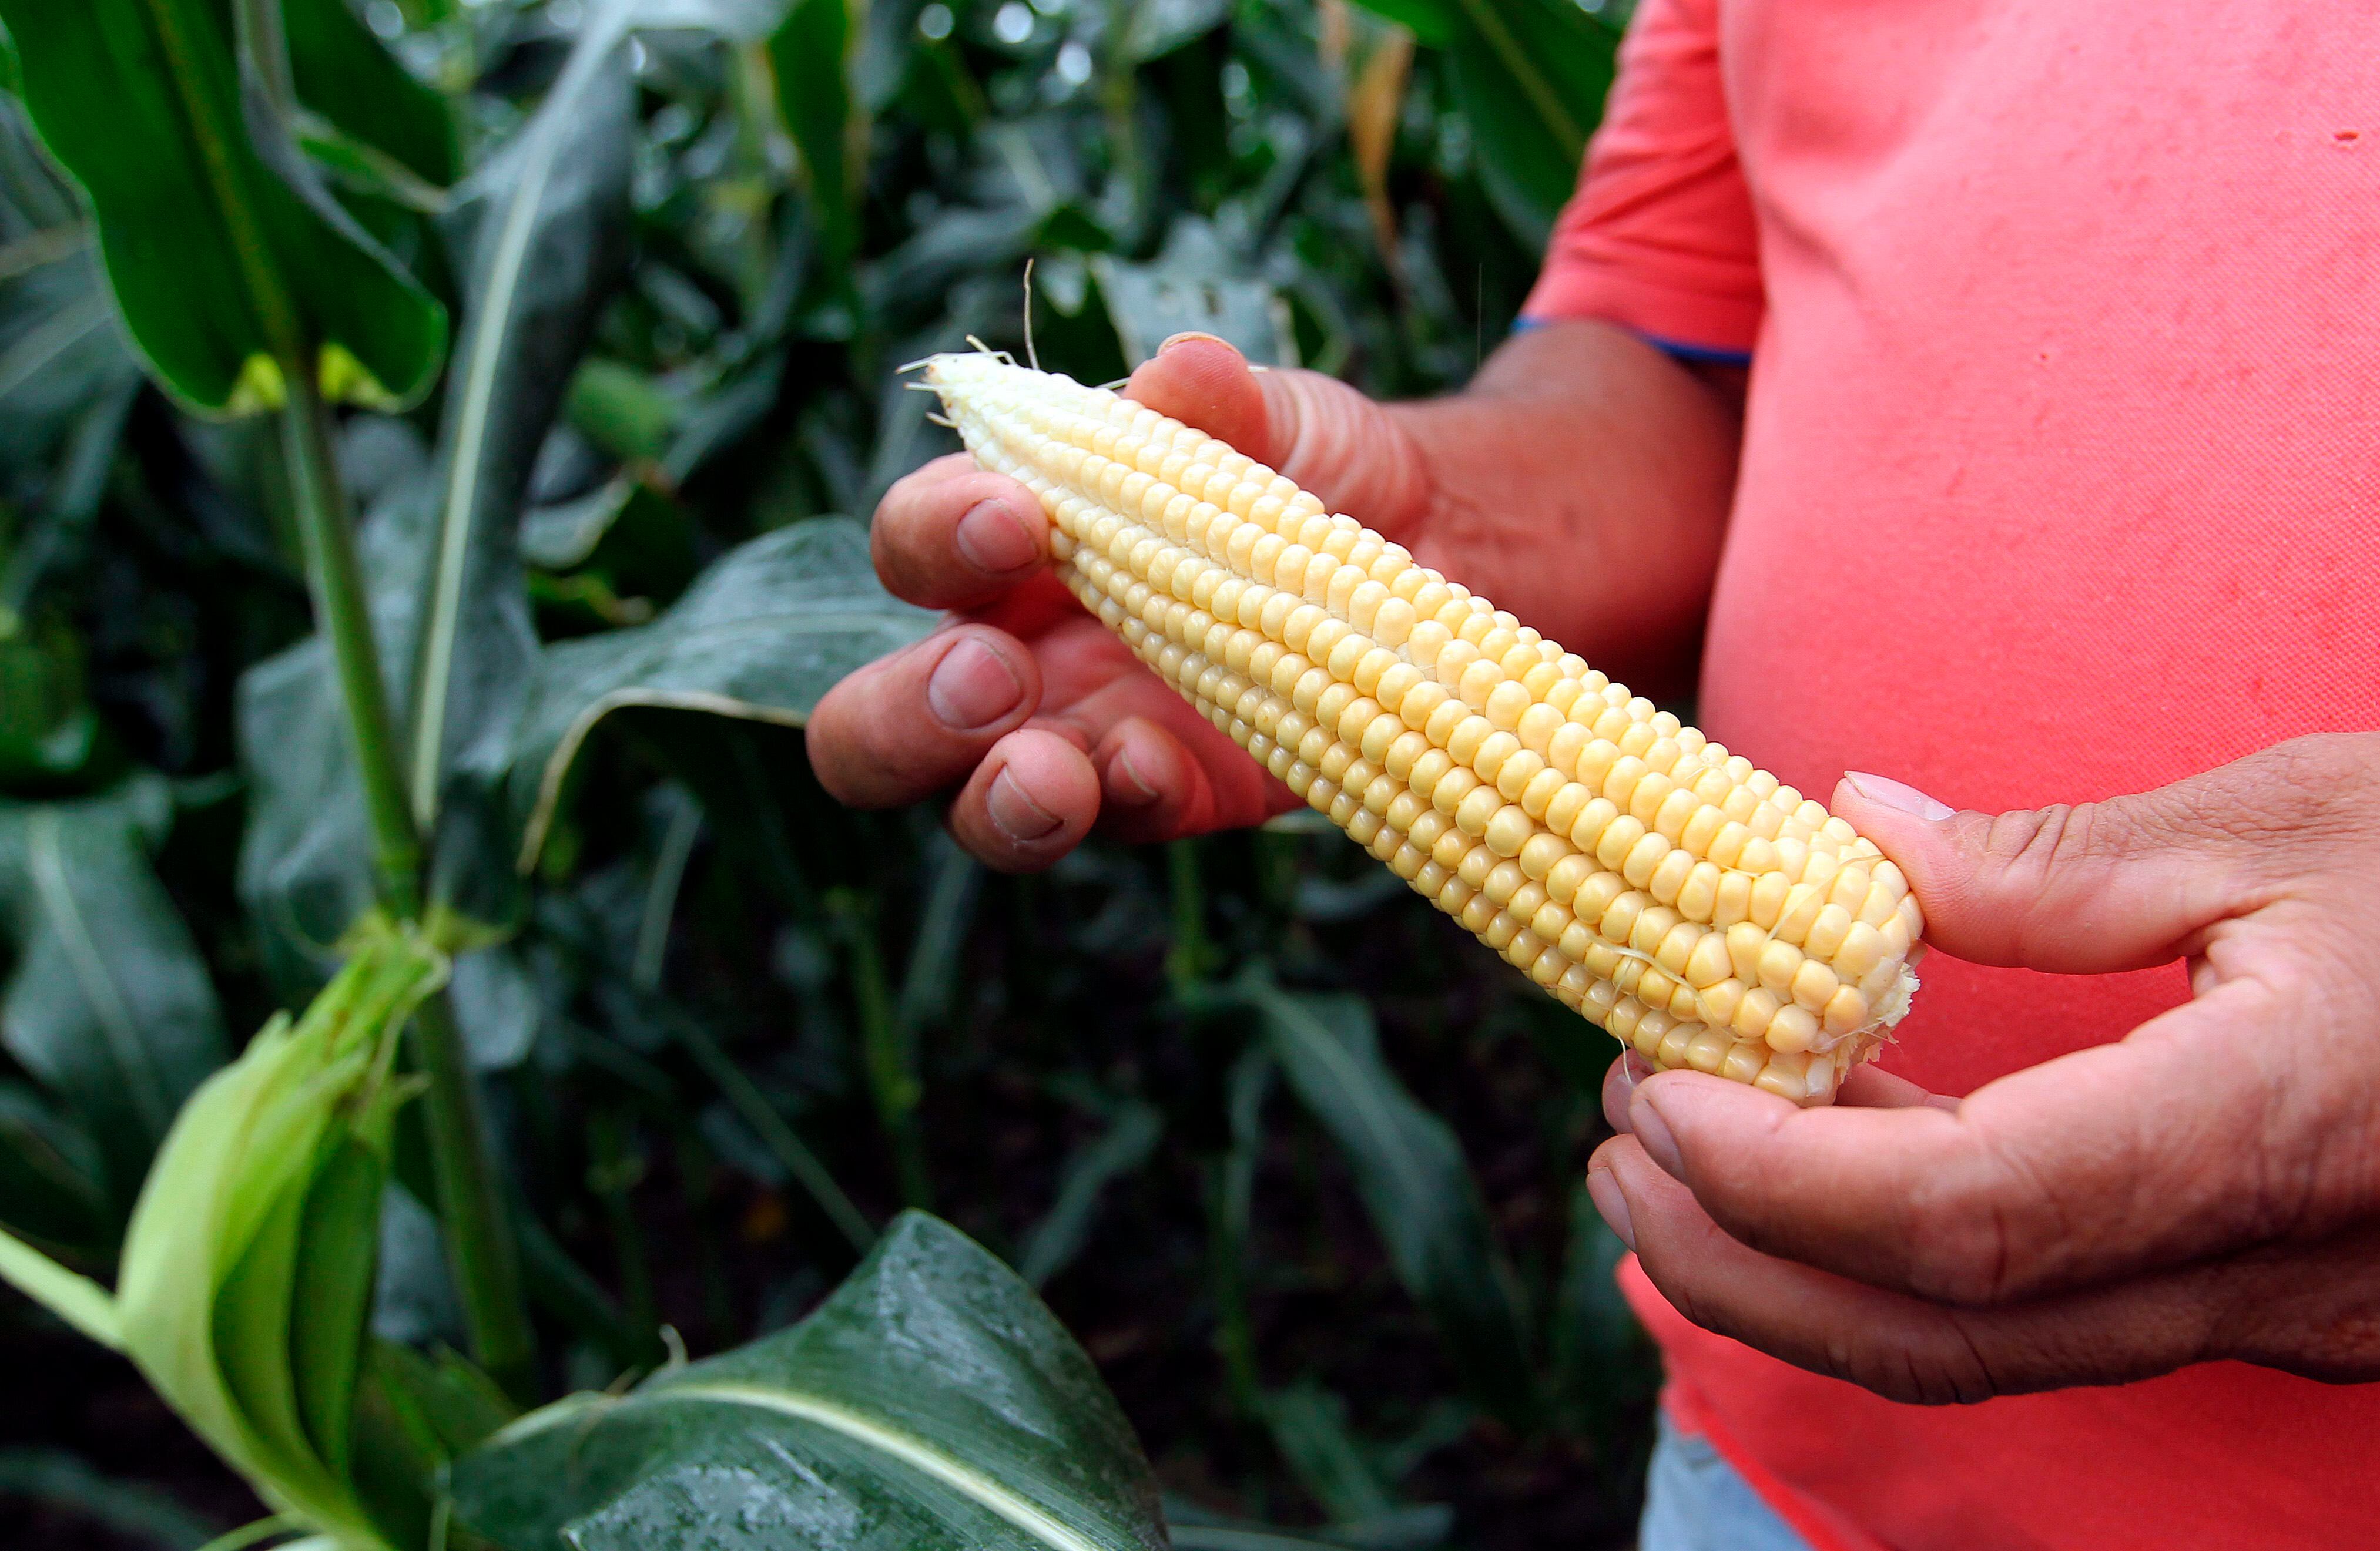 Las semillas transgénicas han permitido a los agricultores colombianos mejorar las cosechas de maíz y algodón sin ampliar la frontera agrícola y con menores costos económicos. EFE /MAURICIO DUEÑAS CASTAÑEDA /Archivo